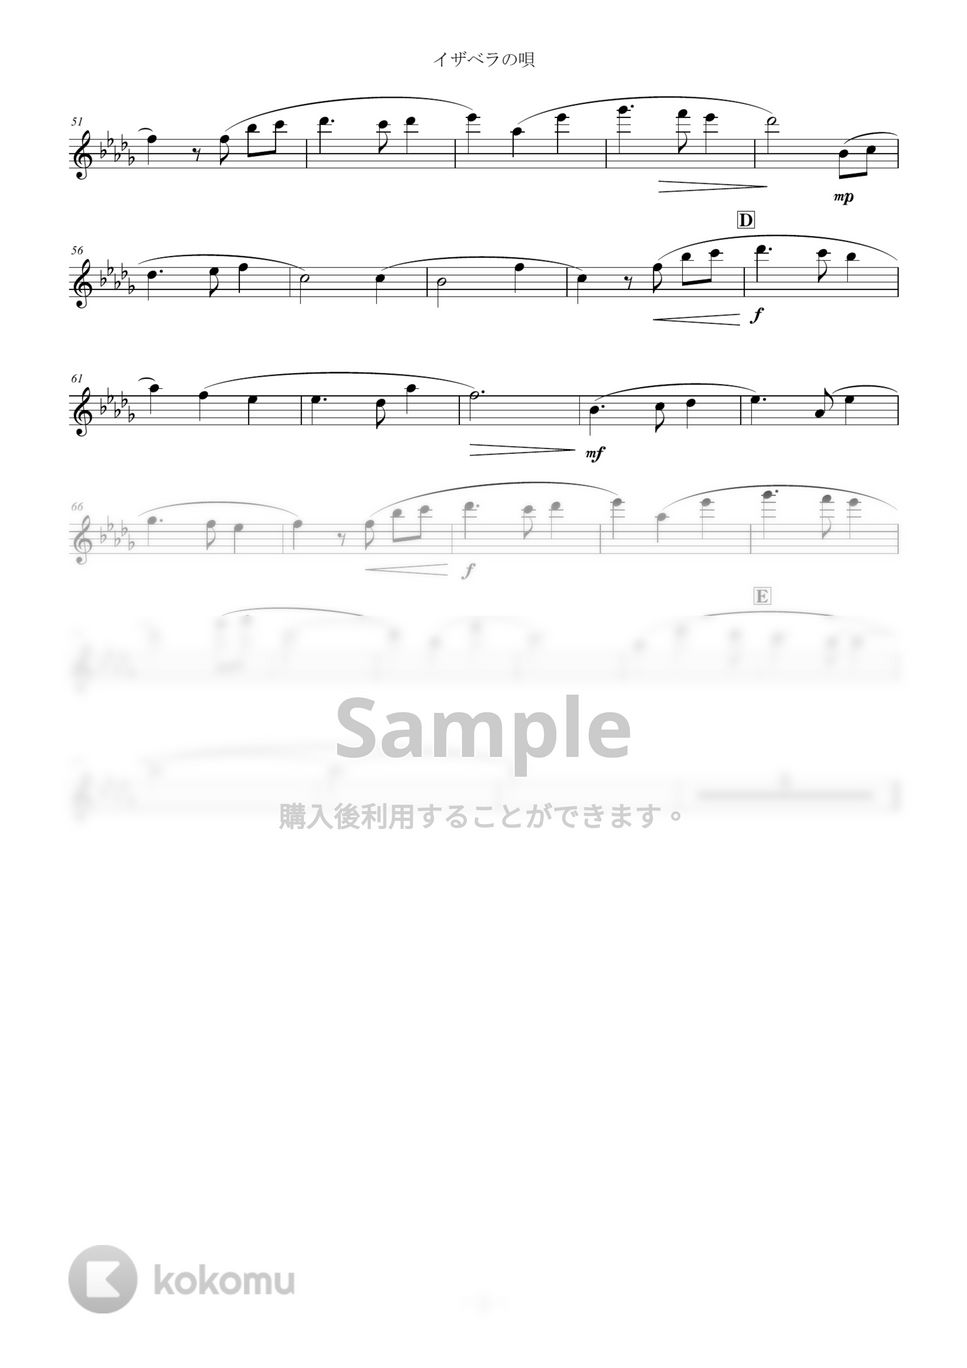 約束のネバーランド - イザベラの唄 (inC) by y.shiori